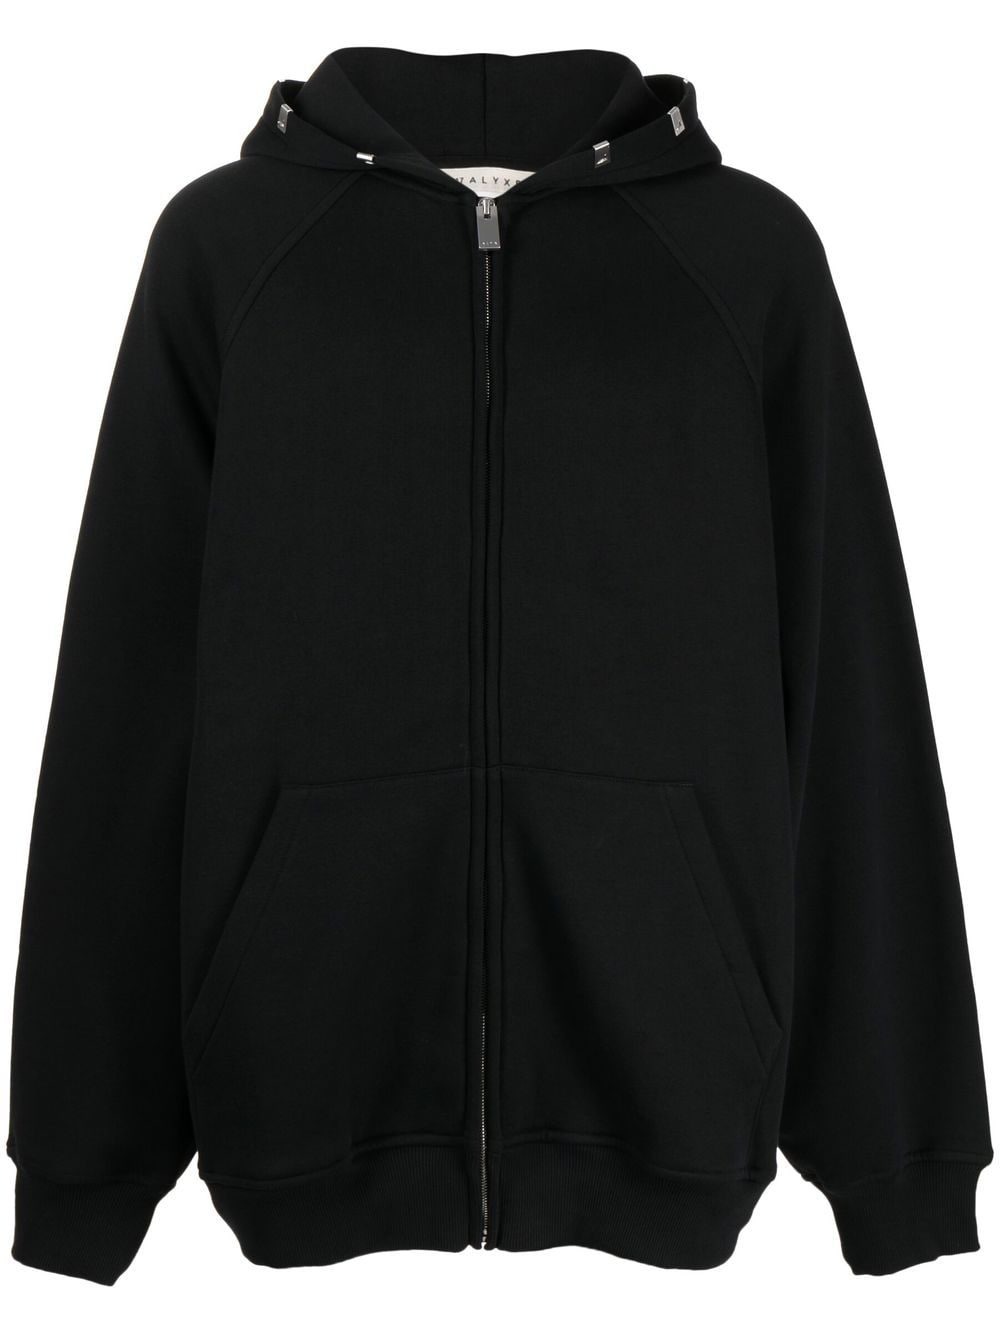 1017 ALYX 9SM zip-up hooded jacket - Black von 1017 ALYX 9SM